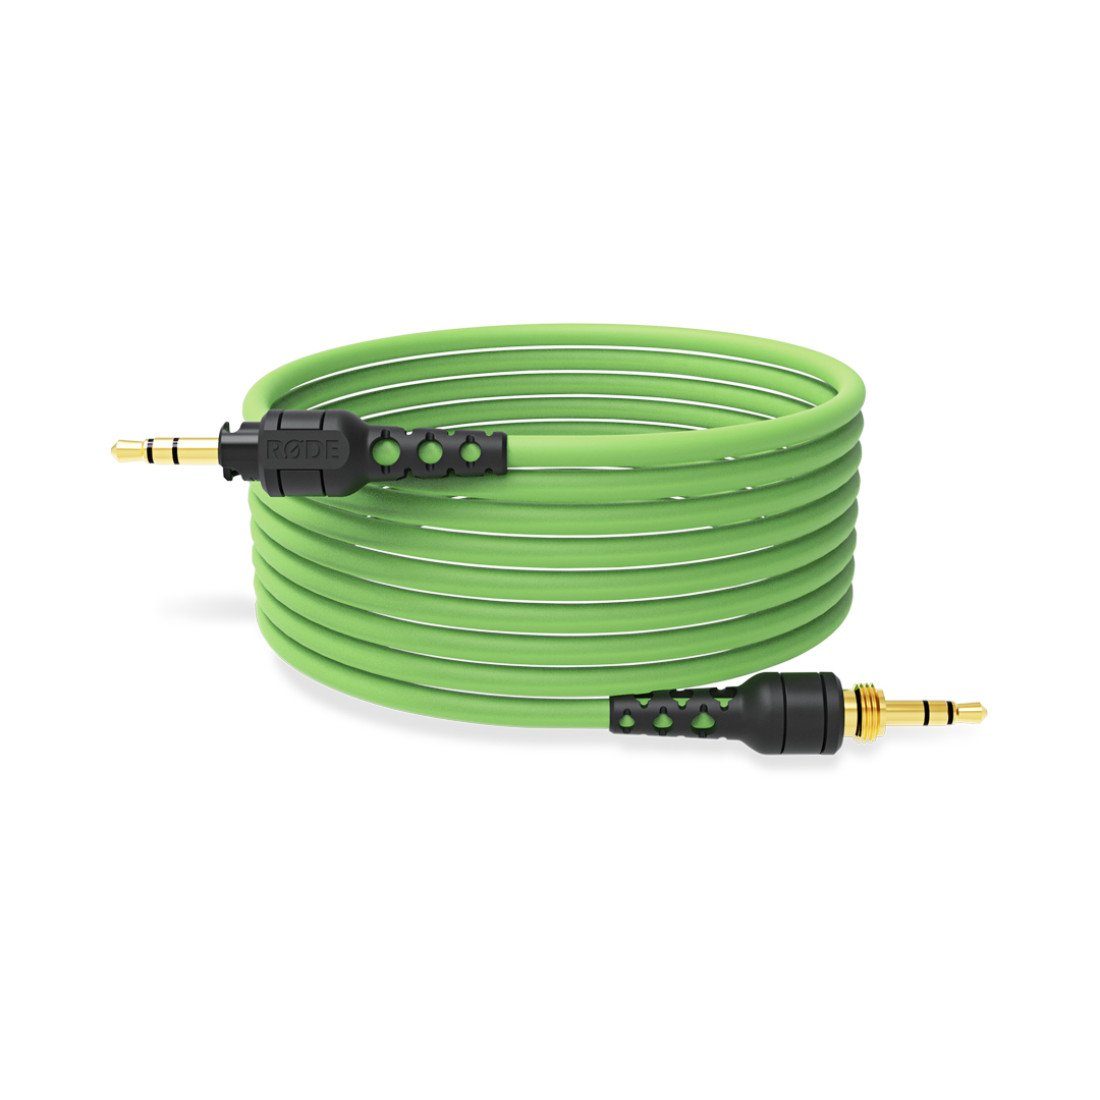 RØDE NTH-100 Kopfhörer (mit Tuch) 2.4m Grün, Kabel und